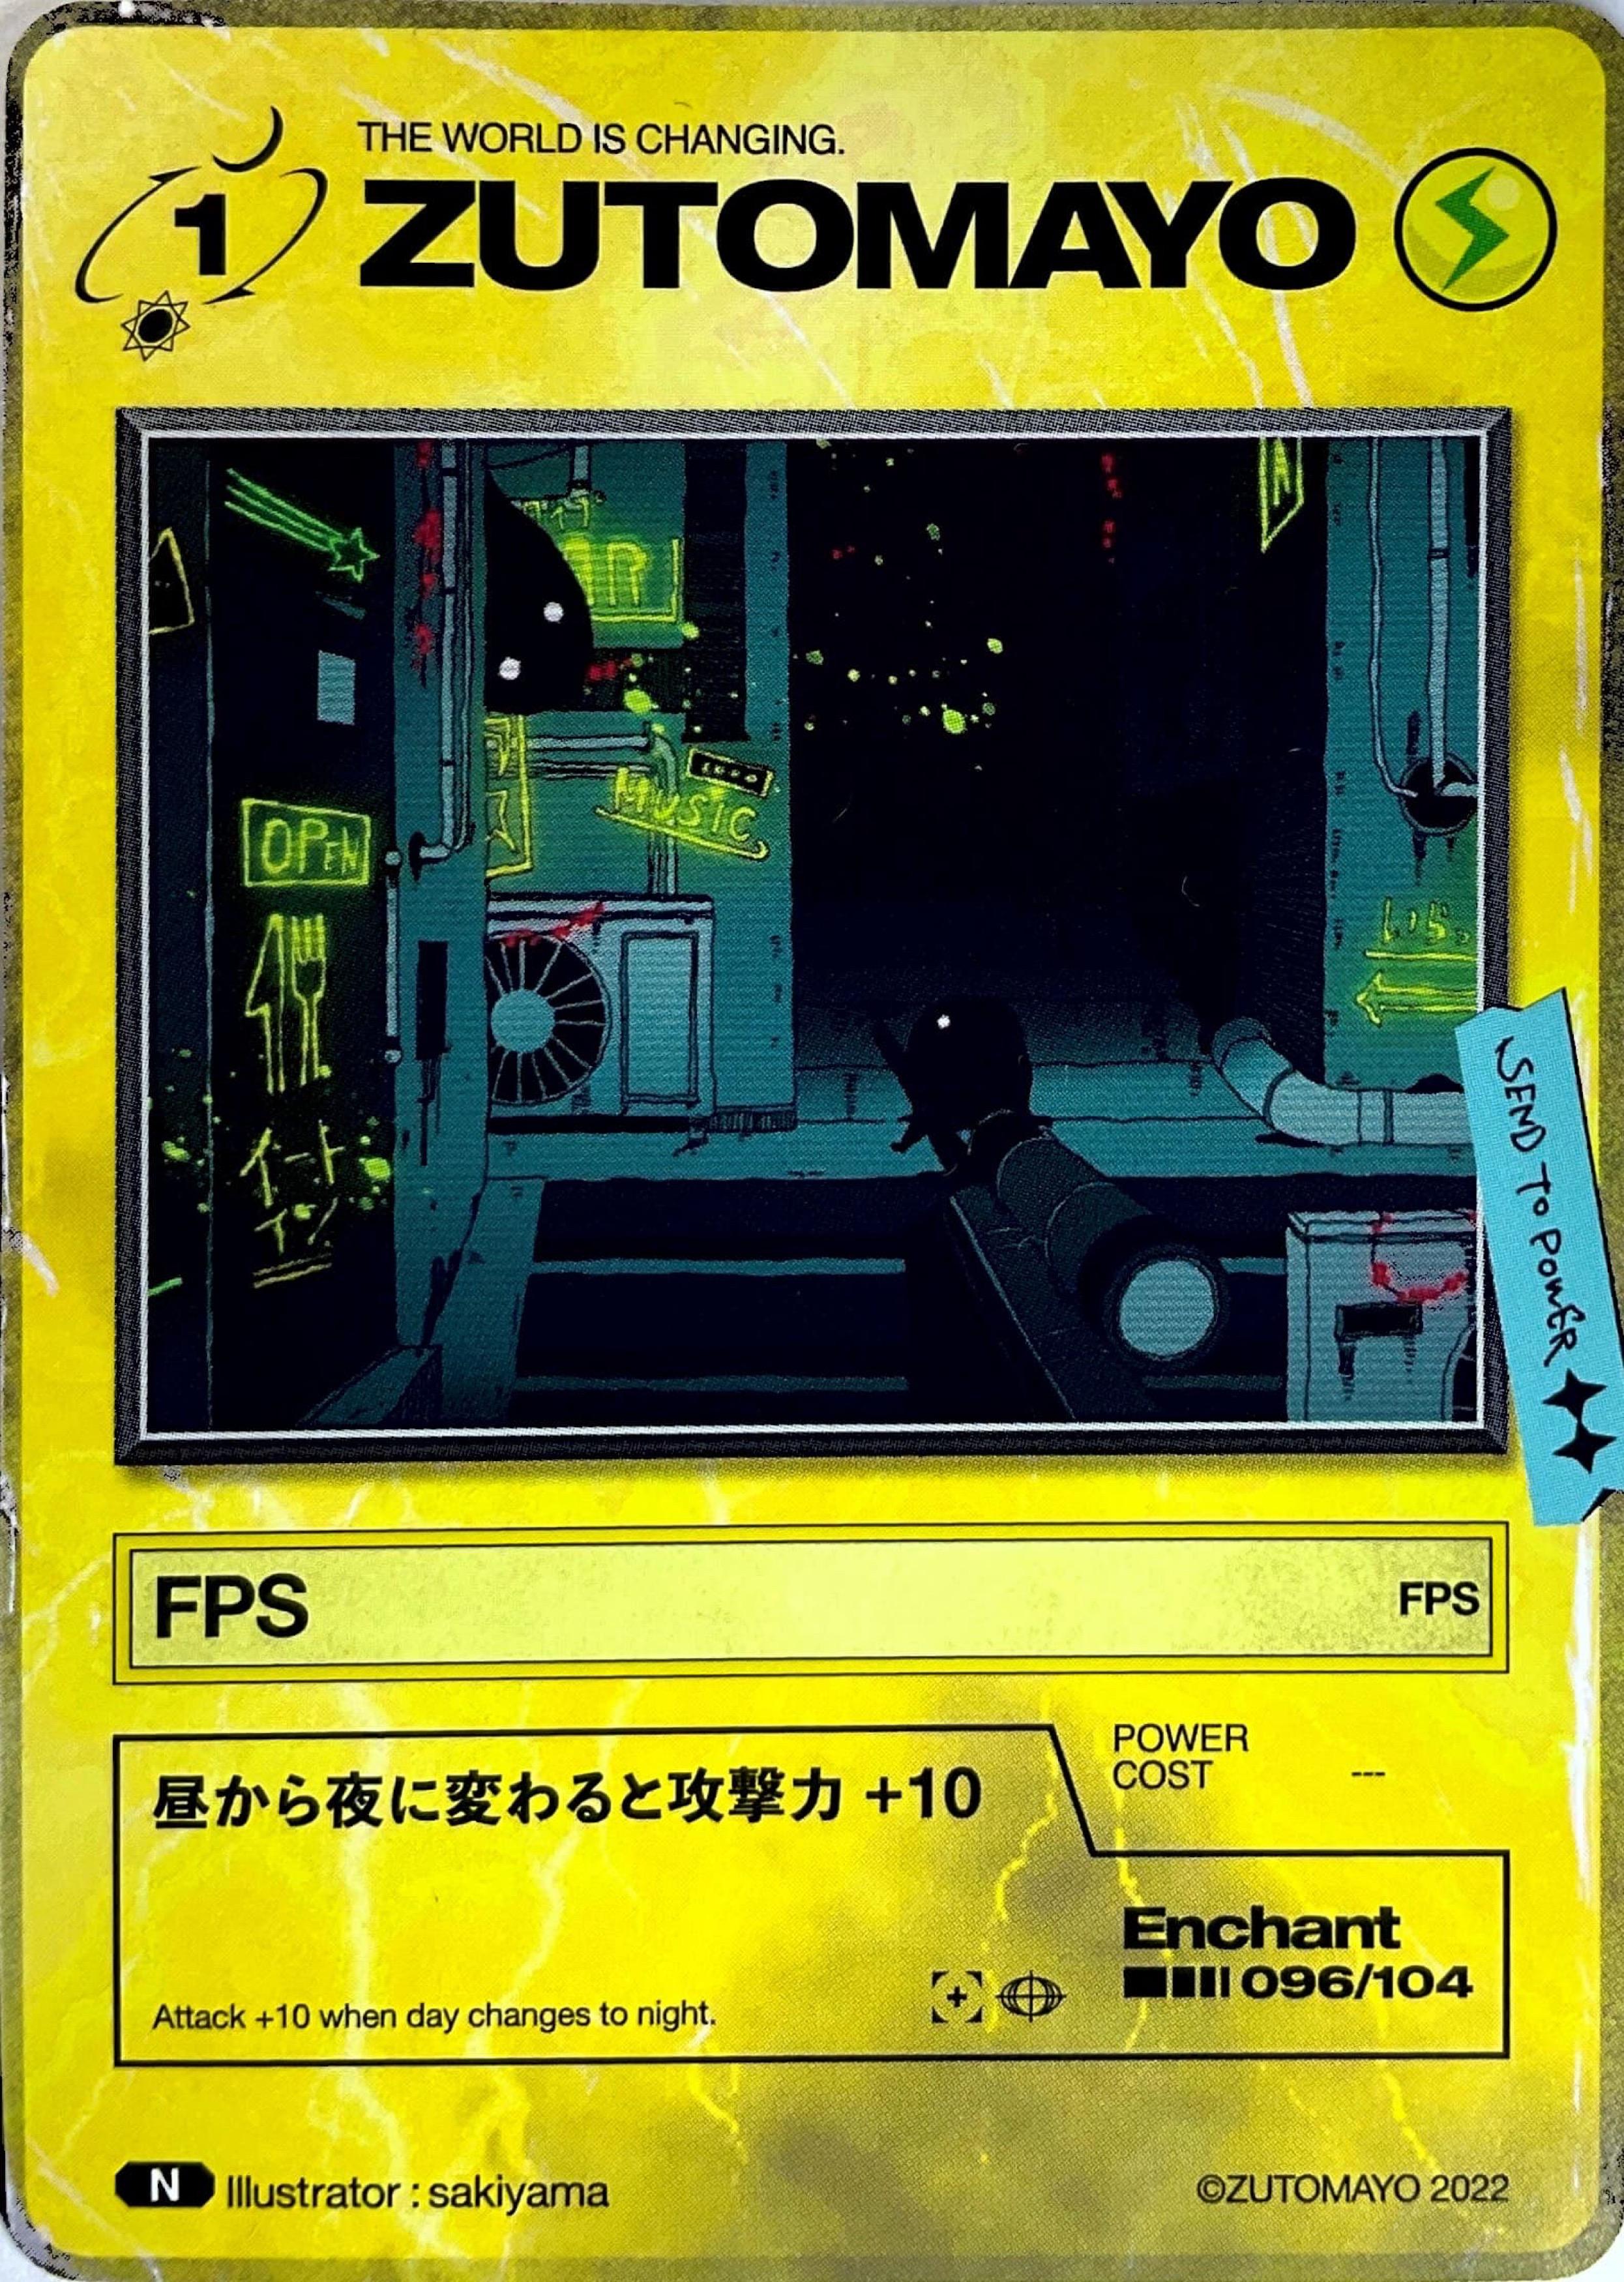 ずとまよカード「FPS」の写真